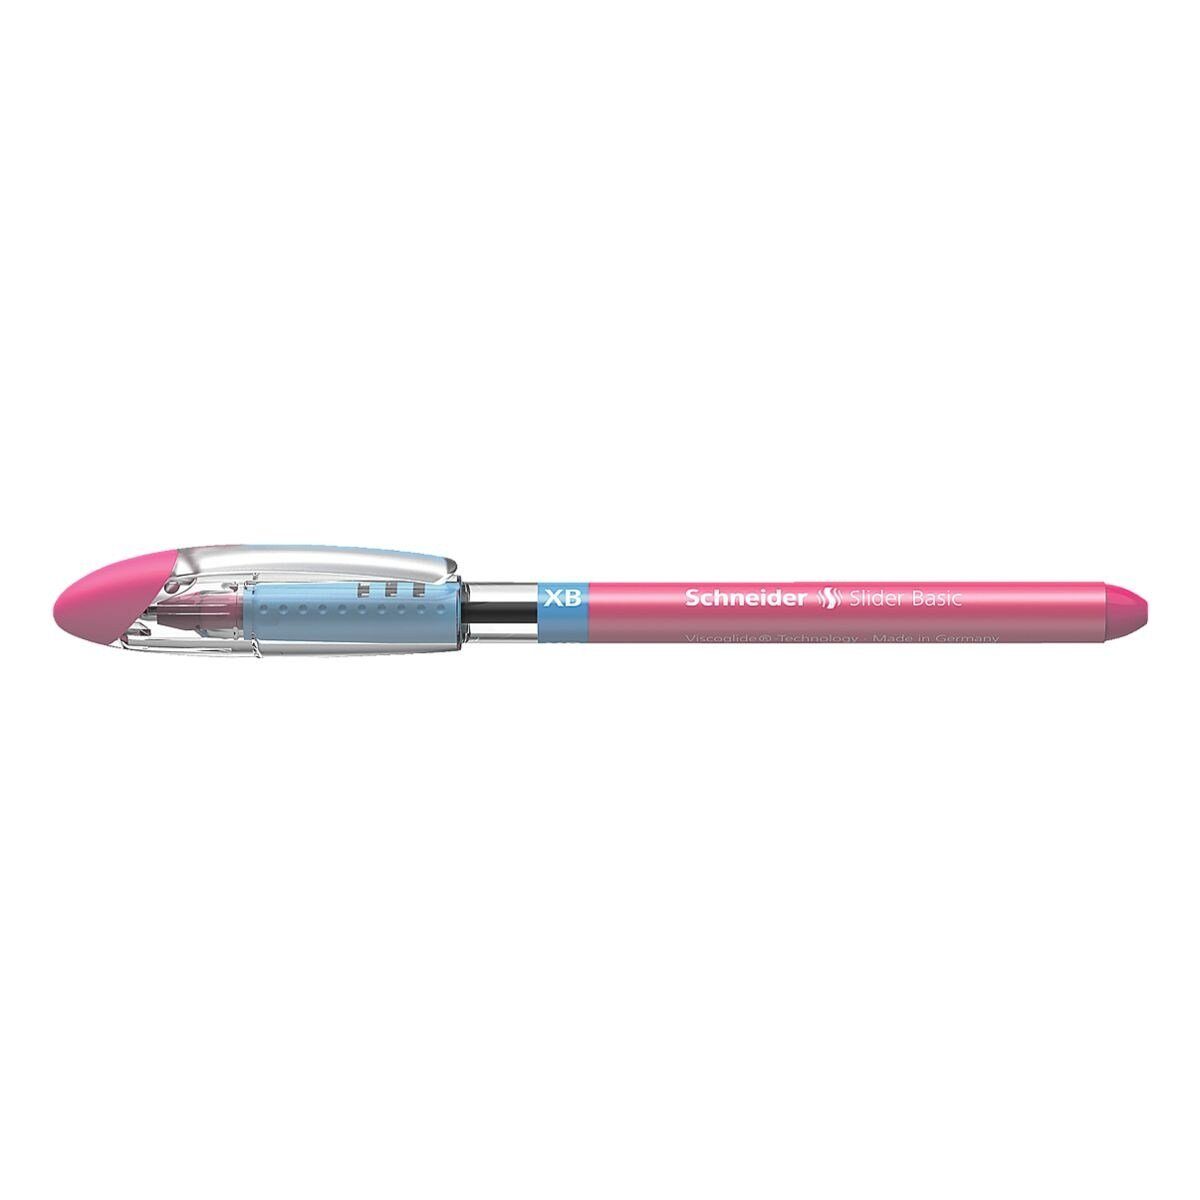 Schneider Kugelschreiber Slider XB 1512, mit Kappe, Strichbreite: 0,7 mm (XB) pink | Kugelschreiber